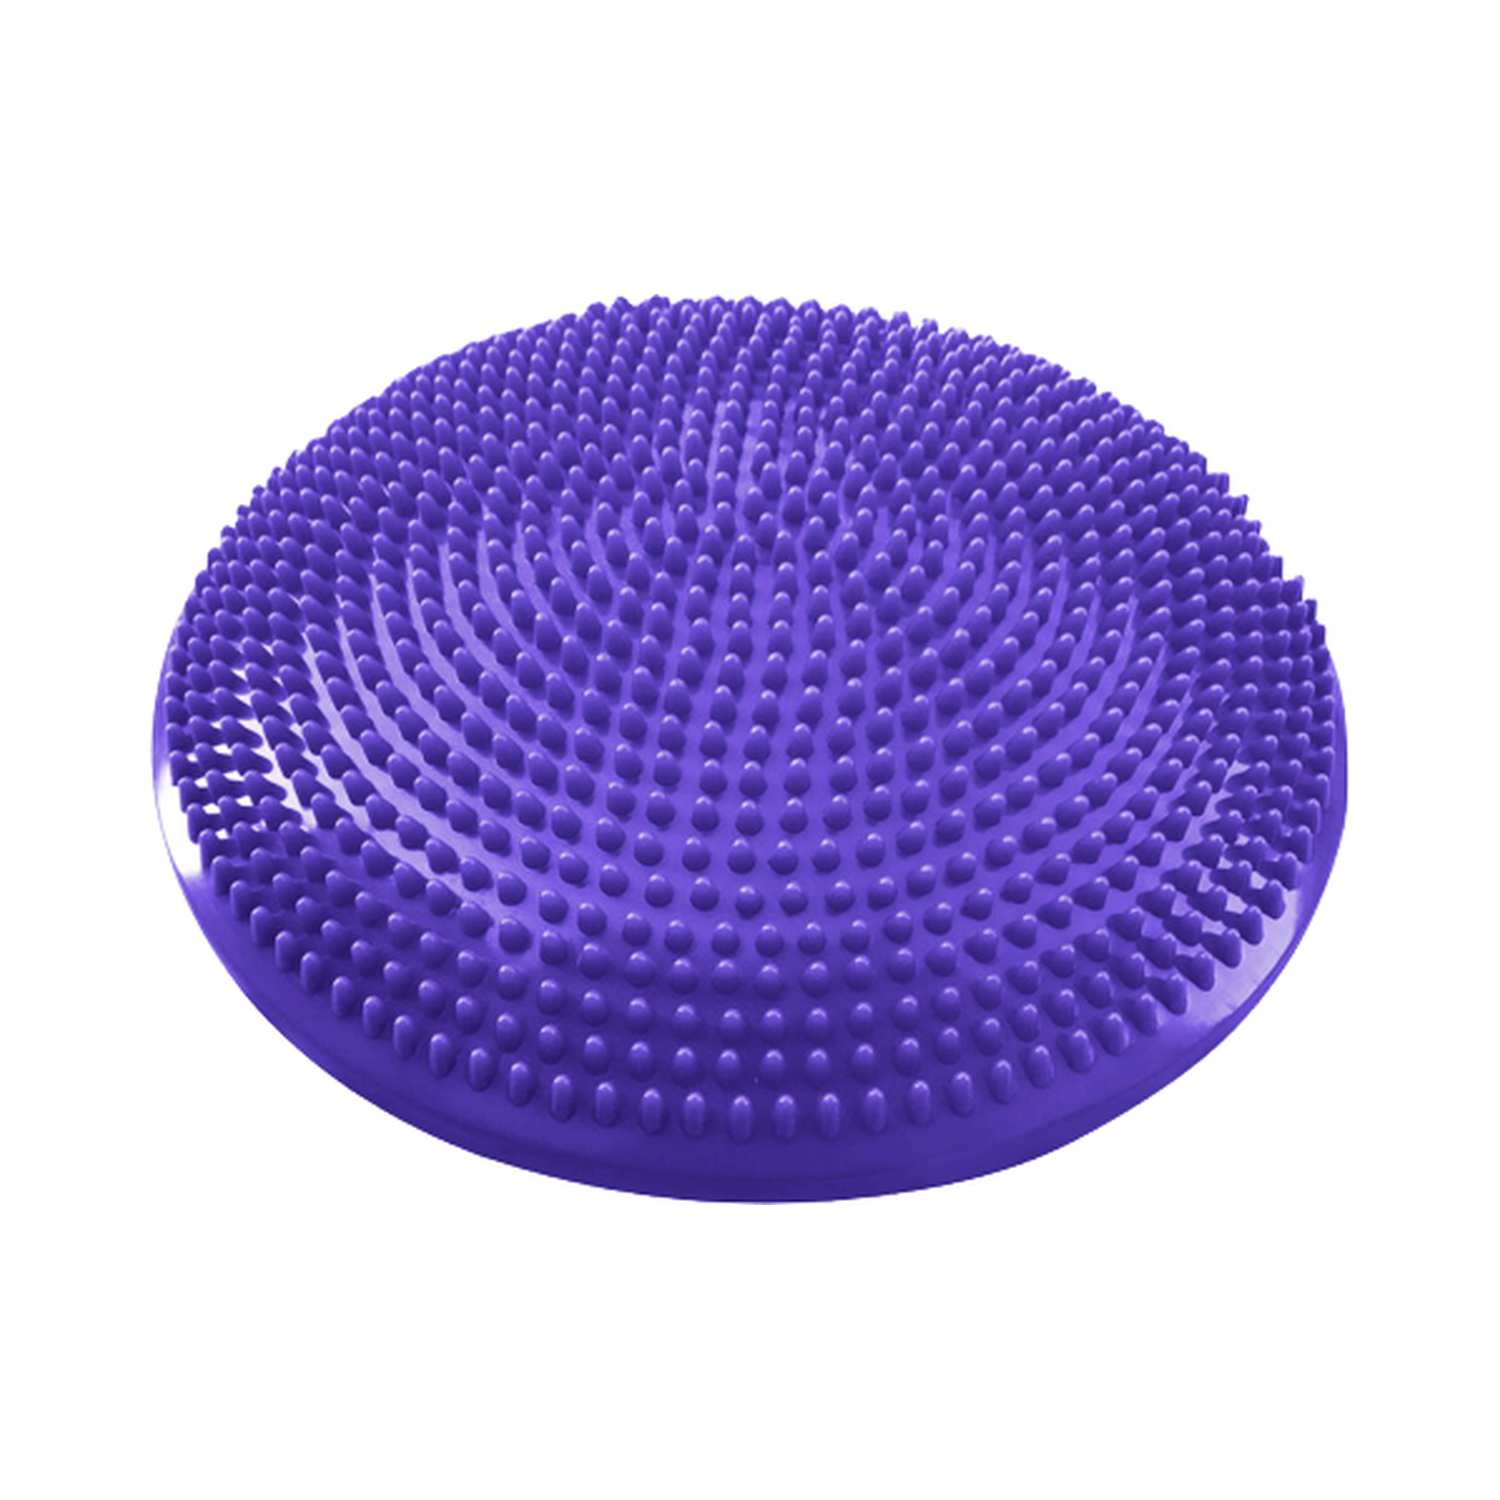 Фитдиск Beroma массажно-балансировочный 33 см фиолетовый - фото 1